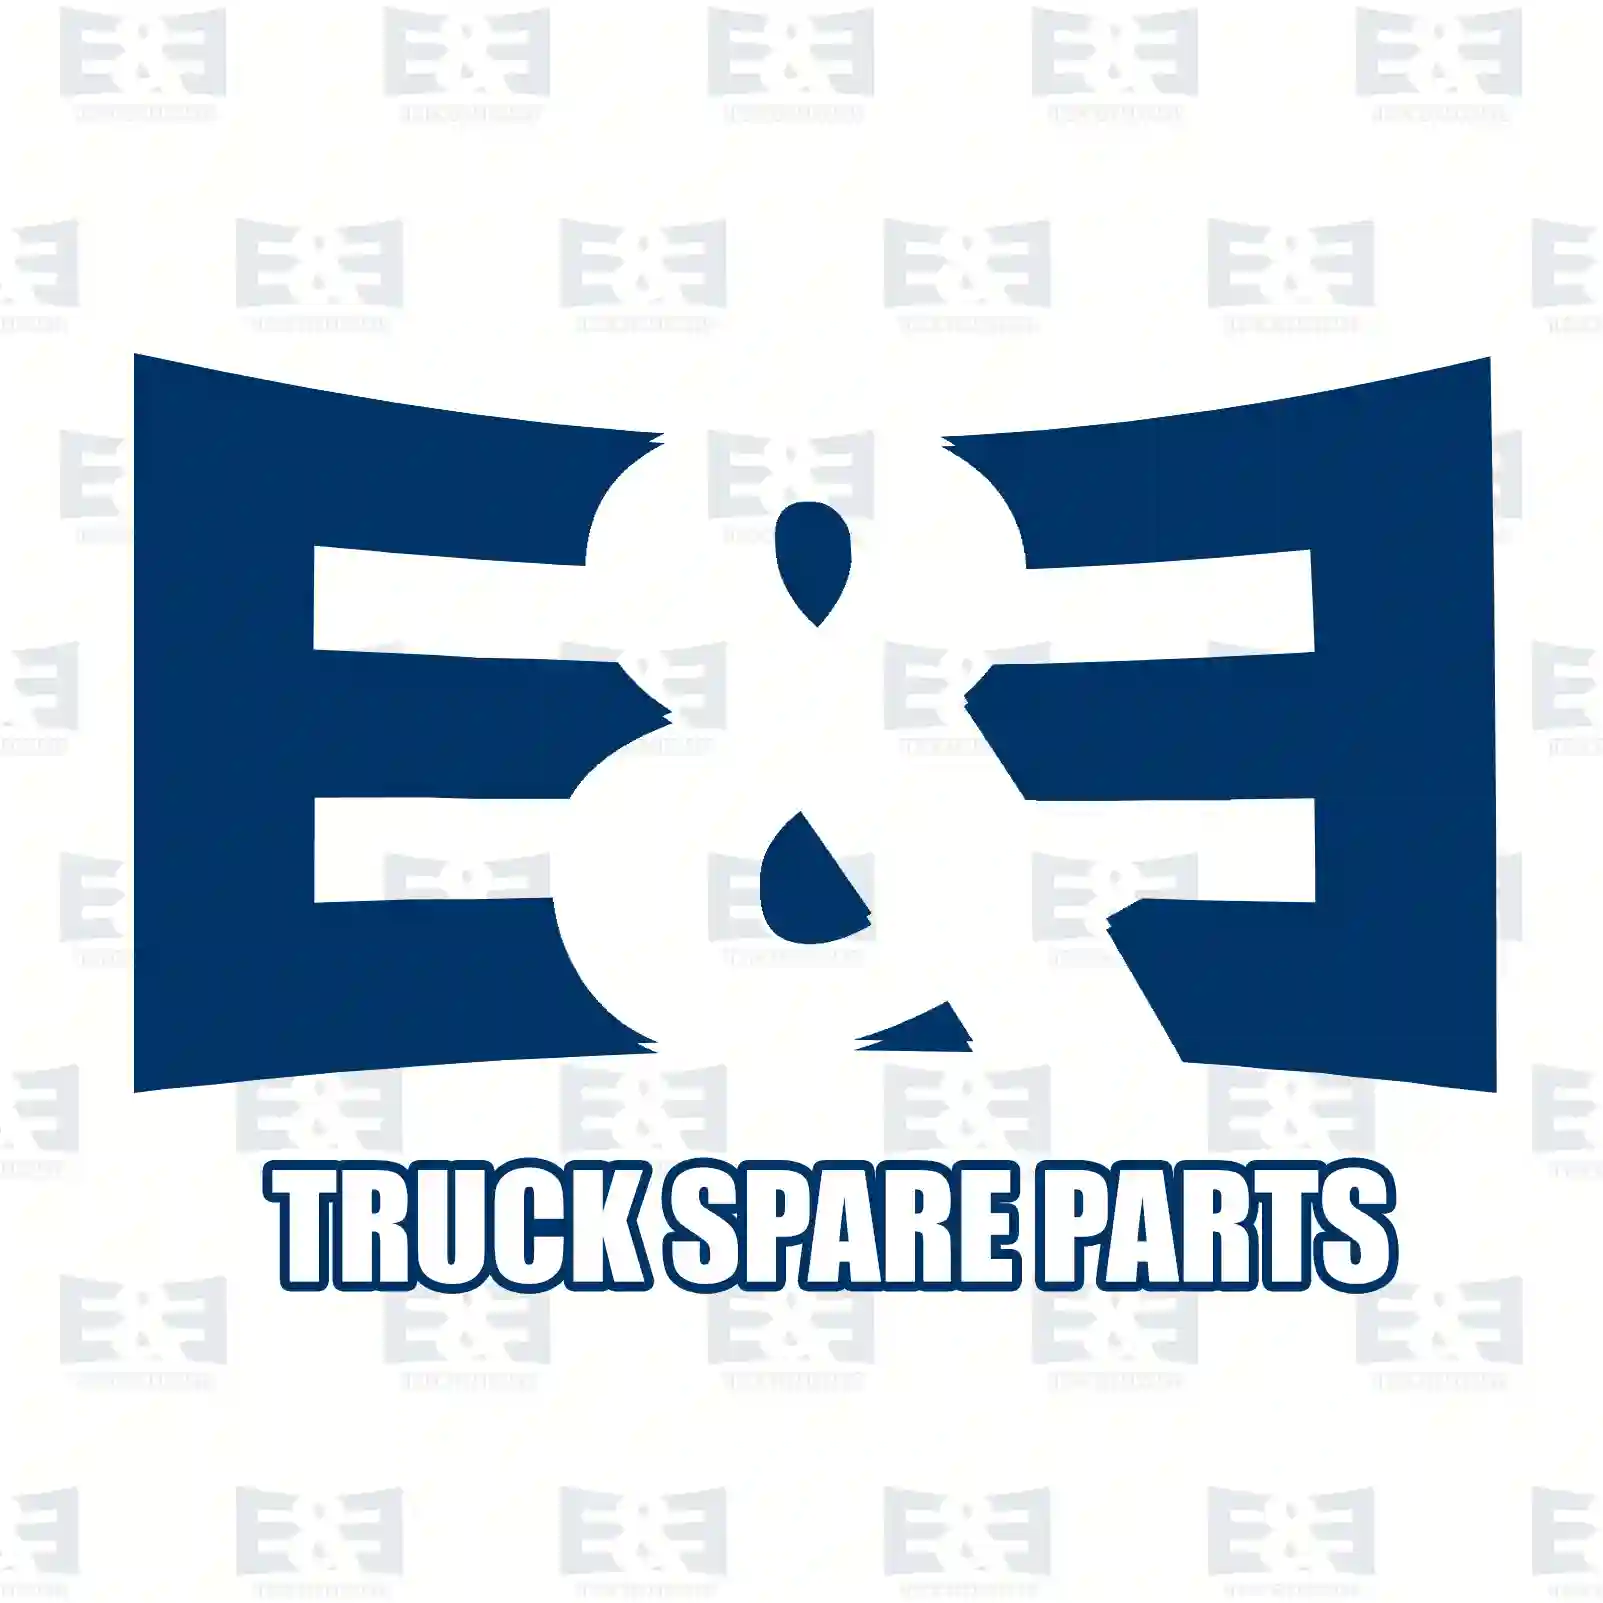 Spring, 2E2278818, 7421140387, 1521940, 20845477, 21140387, ZG40297-0008 ||  2E2278818 E&E Truck Spare Parts | Truck Spare Parts, Auotomotive Spare Parts Spring, 2E2278818, 7421140387, 1521940, 20845477, 21140387, ZG40297-0008 ||  2E2278818 E&E Truck Spare Parts | Truck Spare Parts, Auotomotive Spare Parts